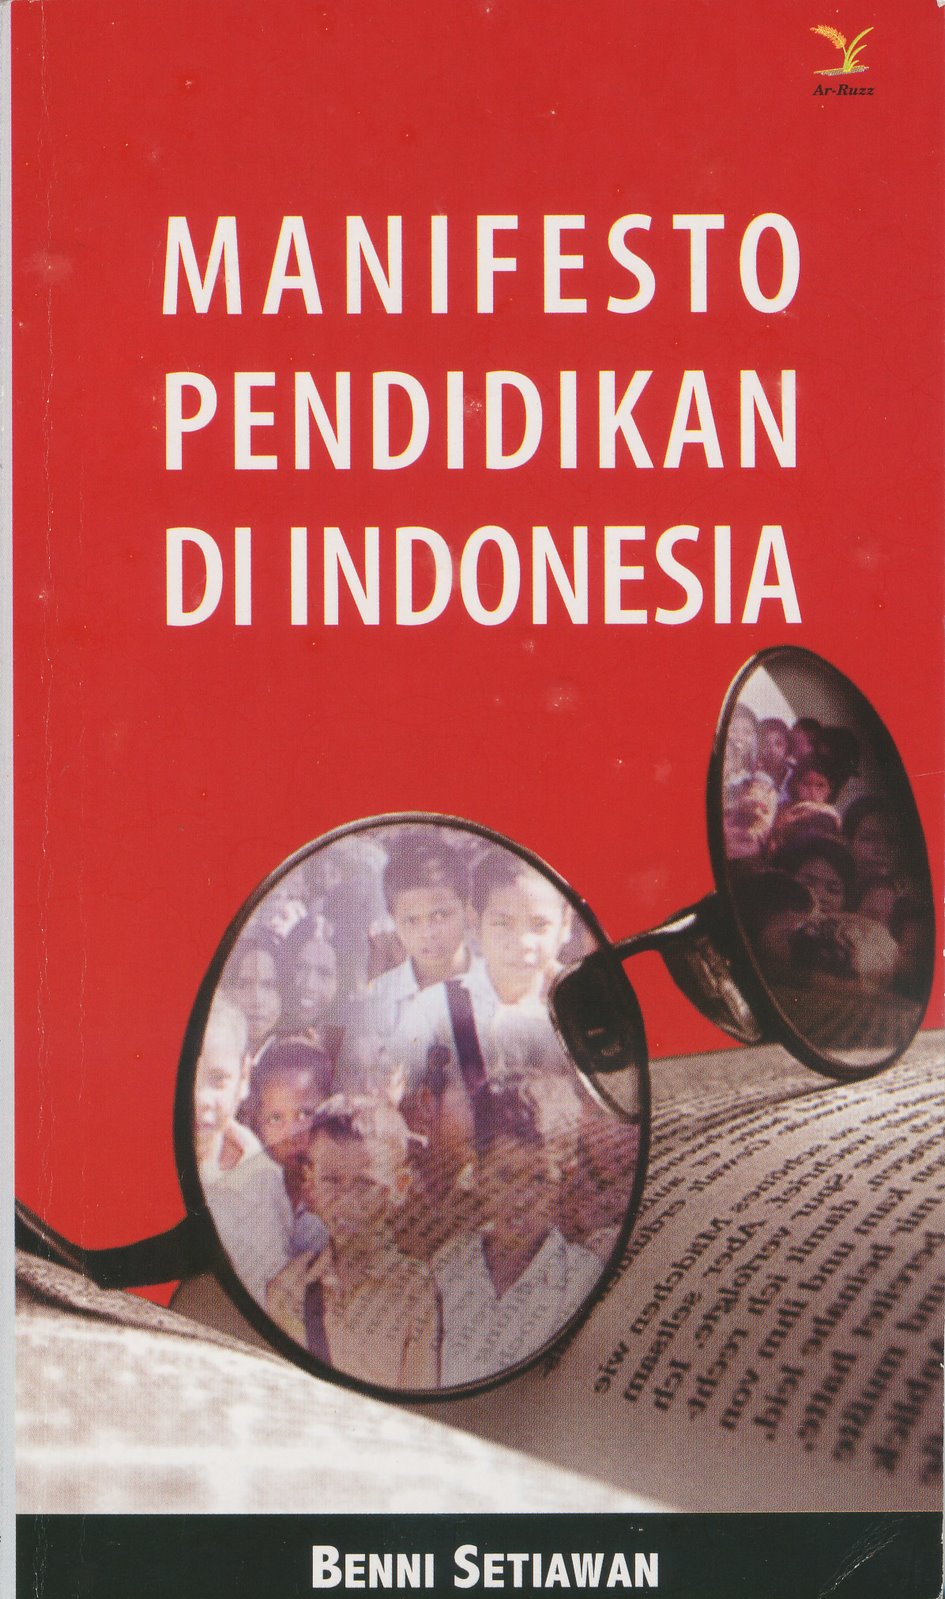 [Manifesto+pendidikan+Indonesia.jpg]